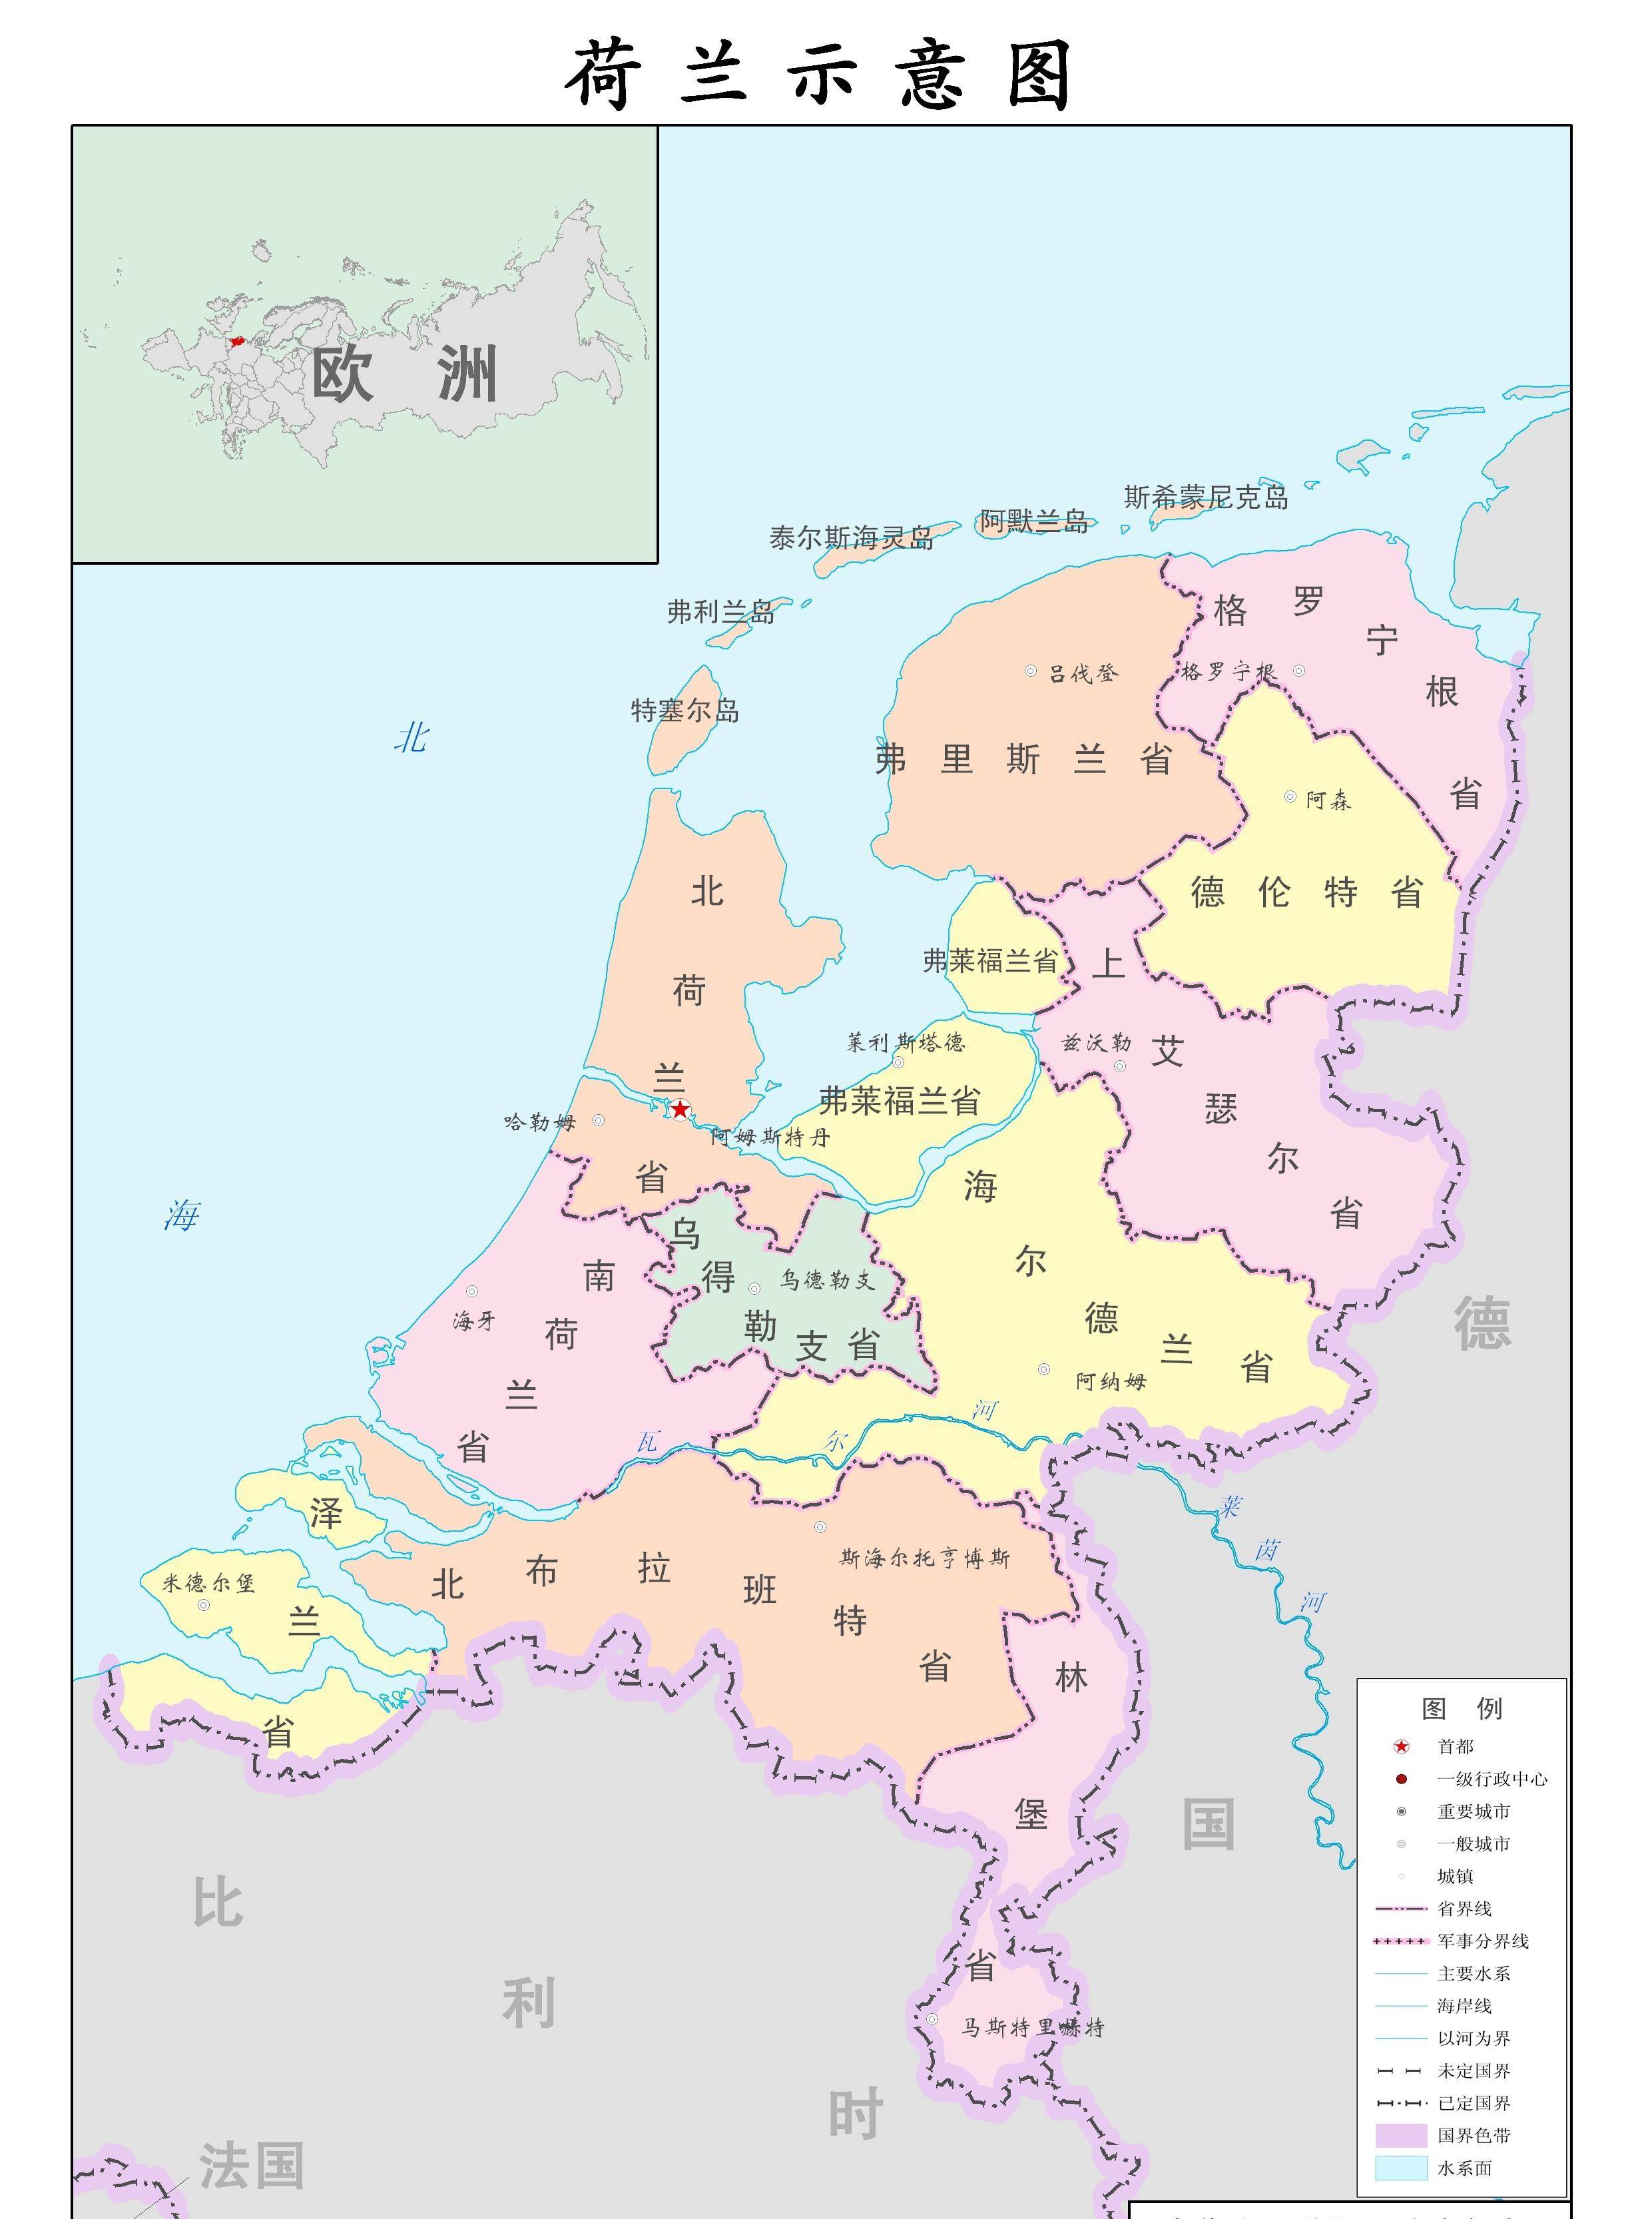 荷兰王国(the kingdom of the netherlands)面积41528平方公里,人口